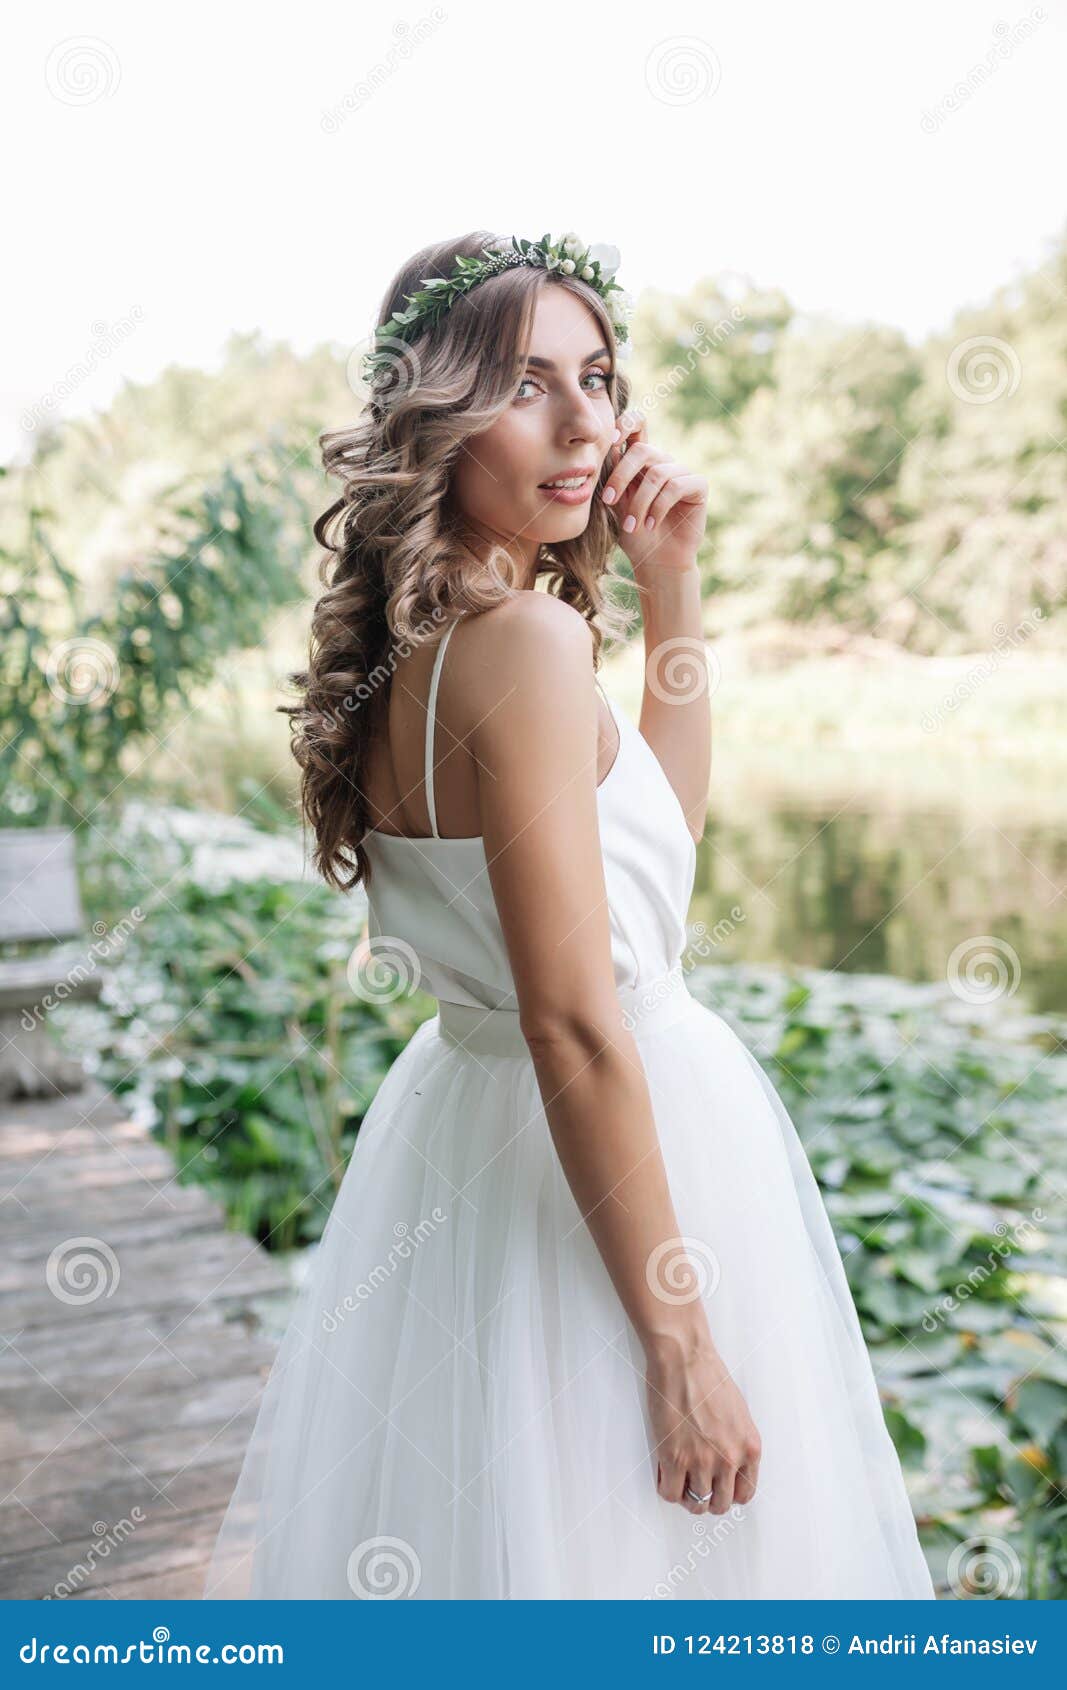 Premium Photo | Beautiful girl in white dress